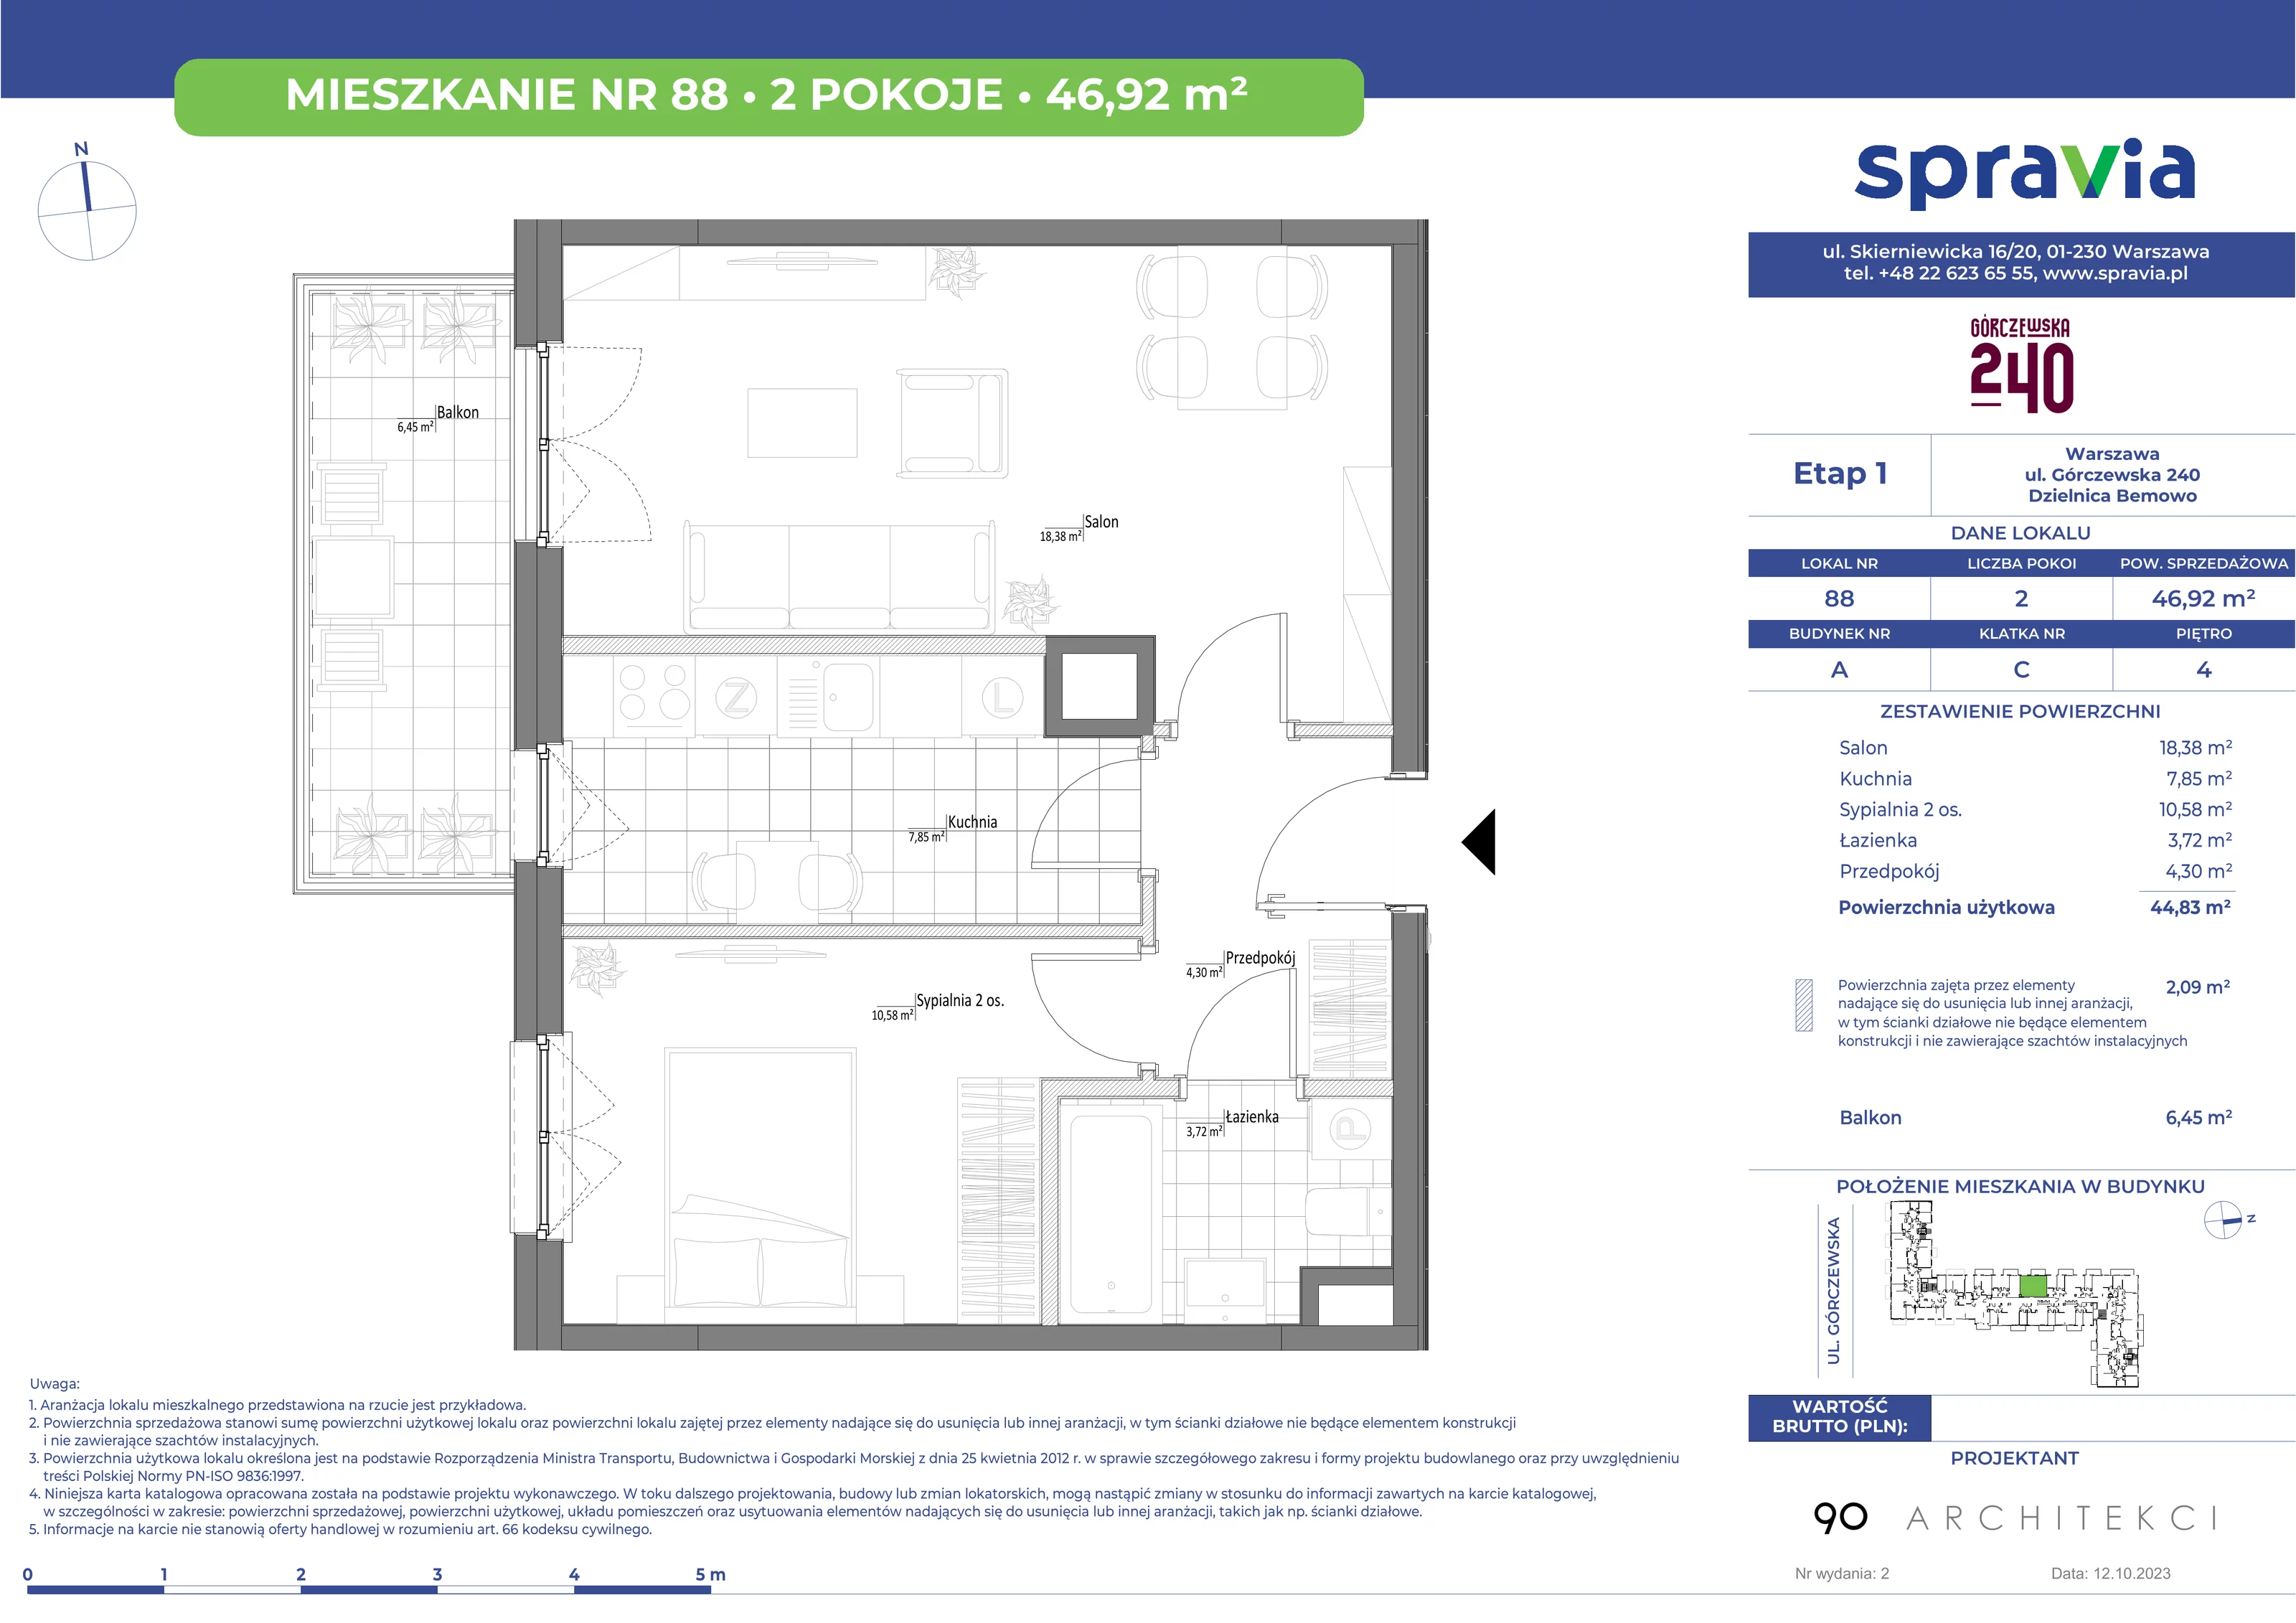 Mieszkanie 46,92 m², piętro 4, oferta nr 88, Górczewska 240, Warszawa, Bemowo, Górce, ul. Górczewska 240